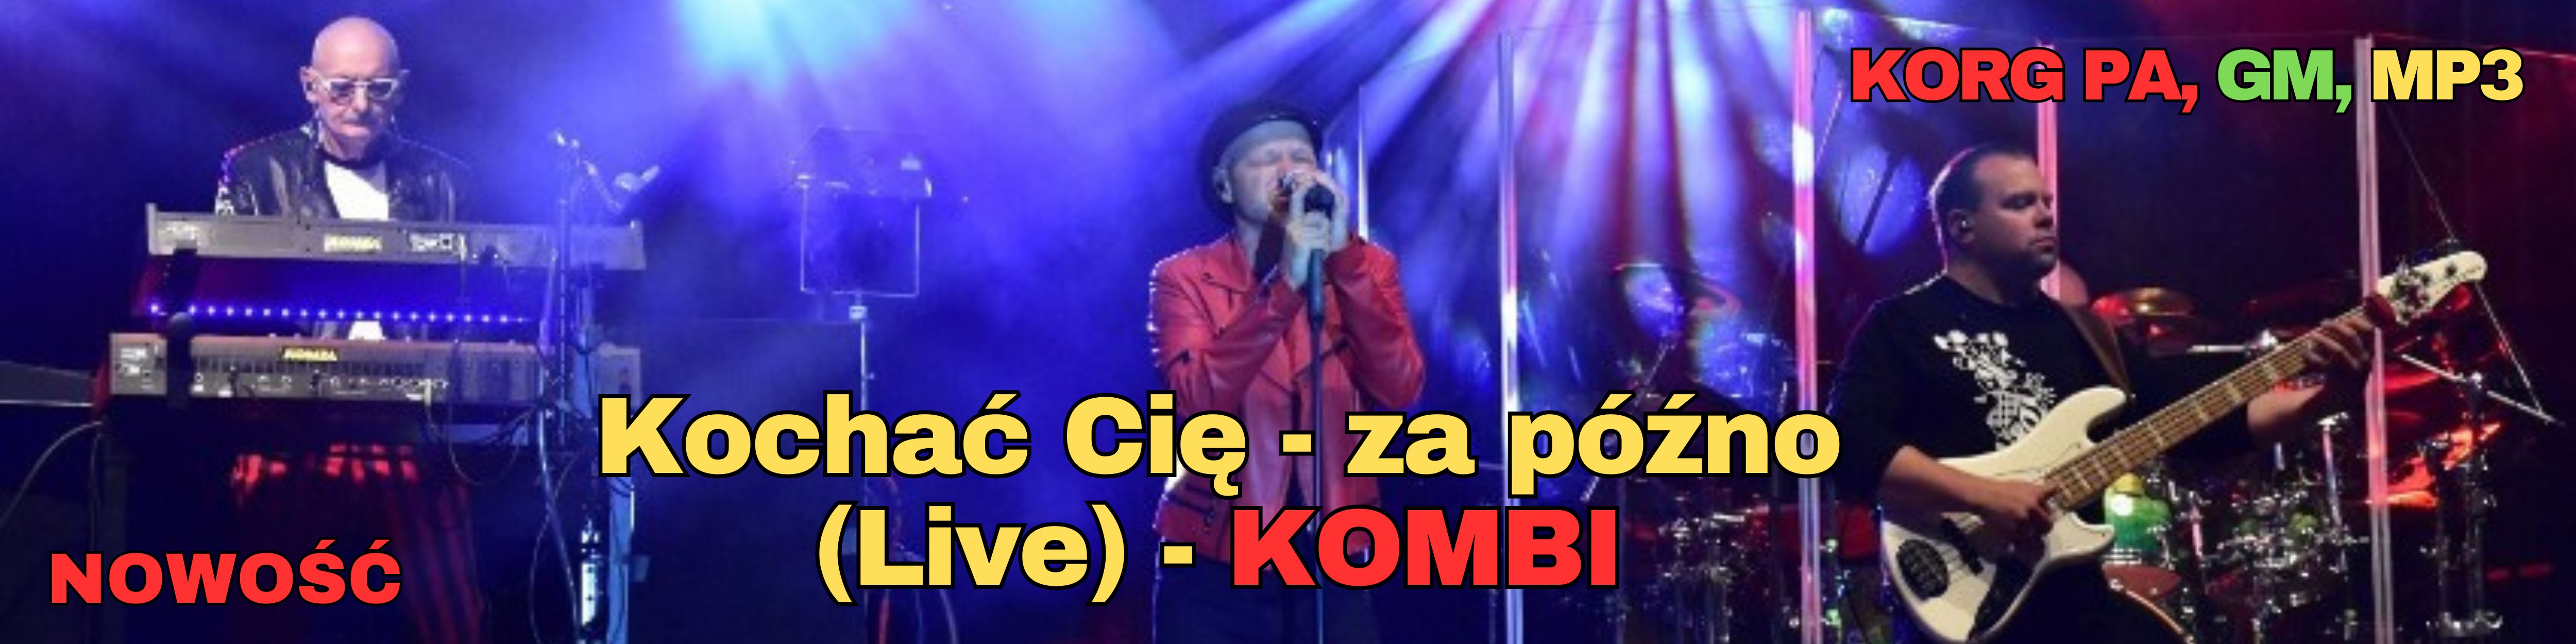 kochac_cie_Kombi_banner